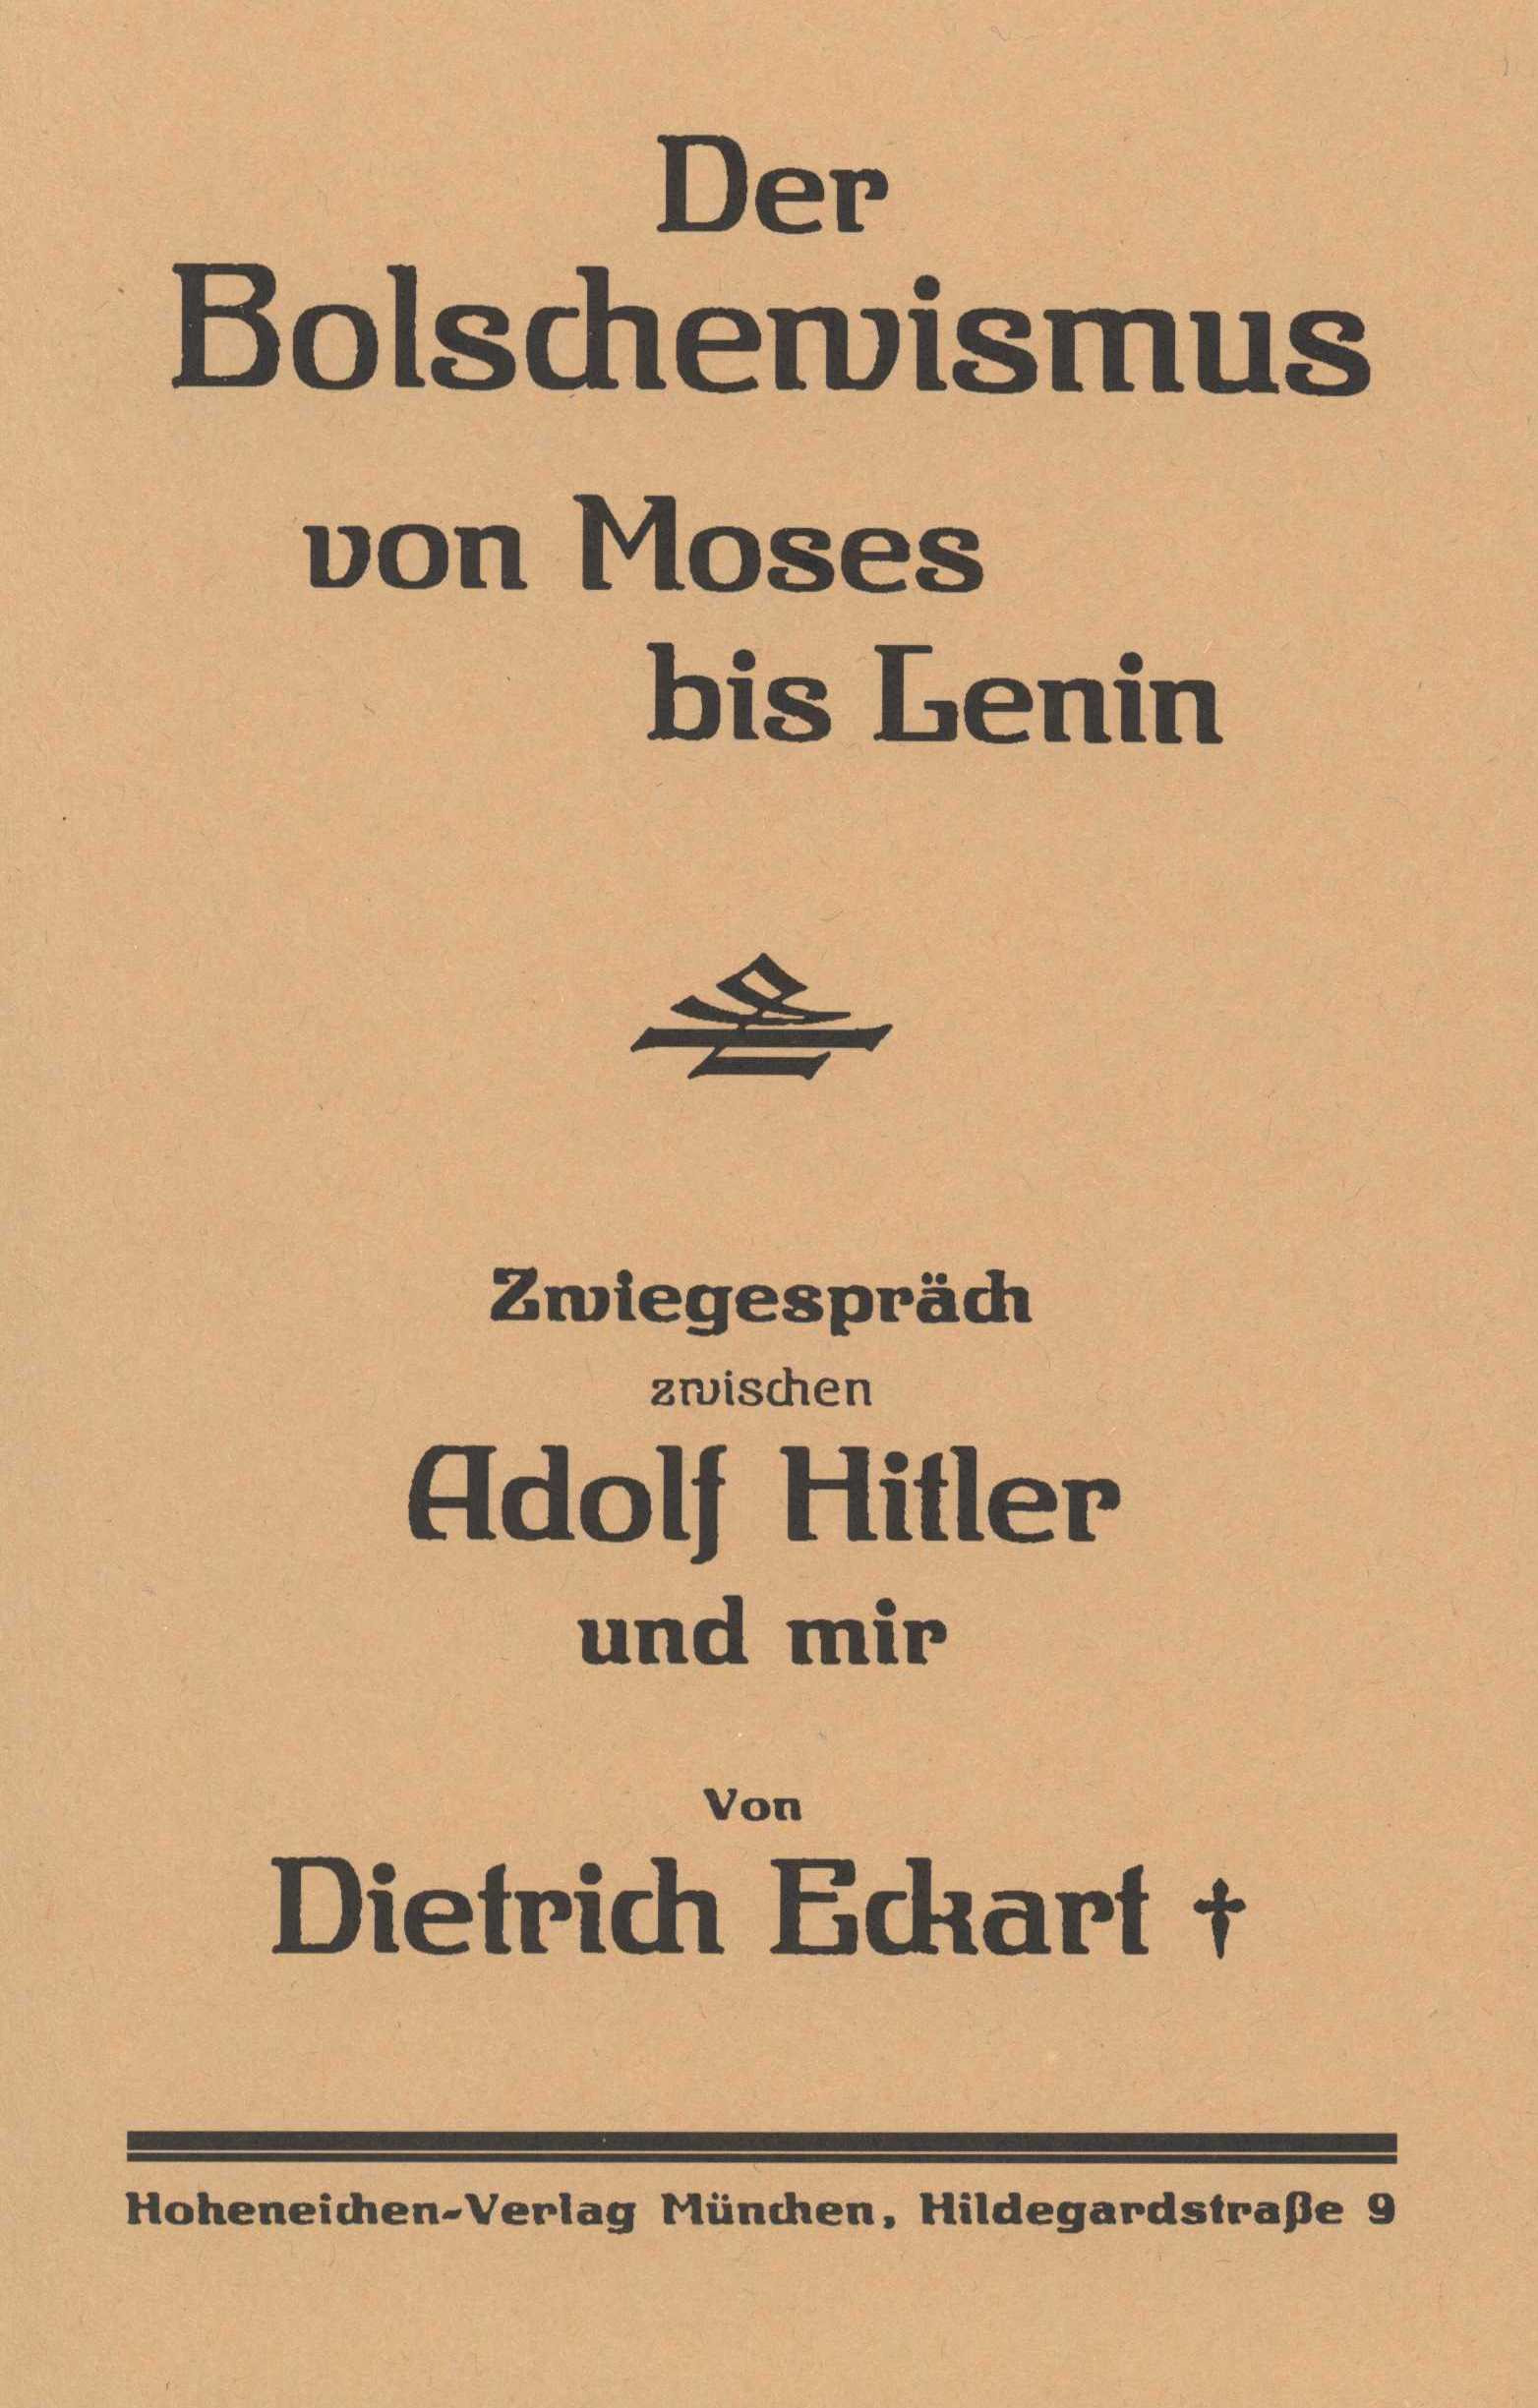 Der Bolschewismus von Moses bis Lenin